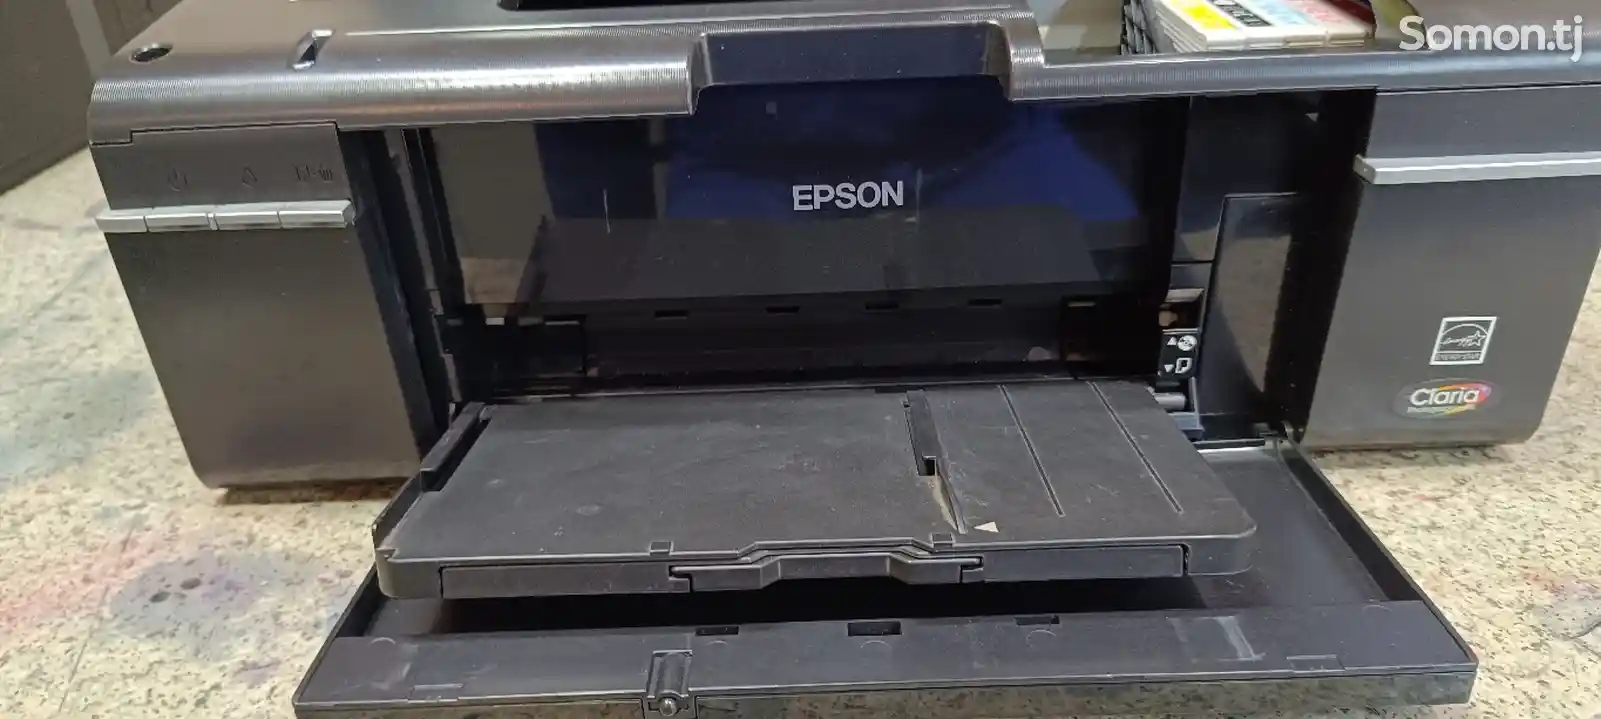 Цветной принтер Epson P50-1